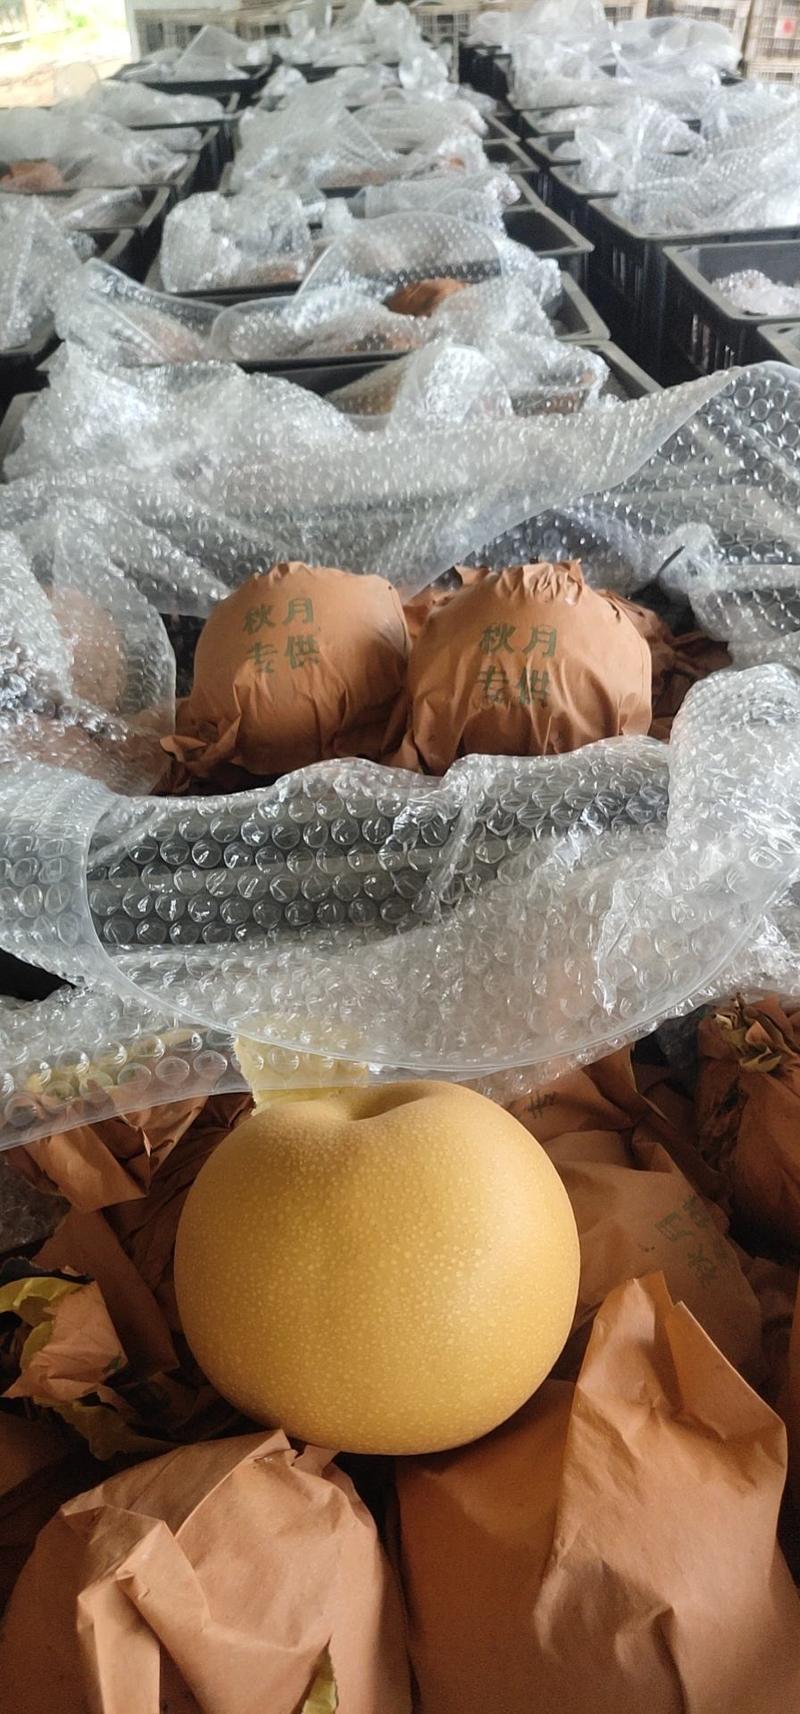 金磊果品大量供应秋月梨纸袋350~500g梨小二